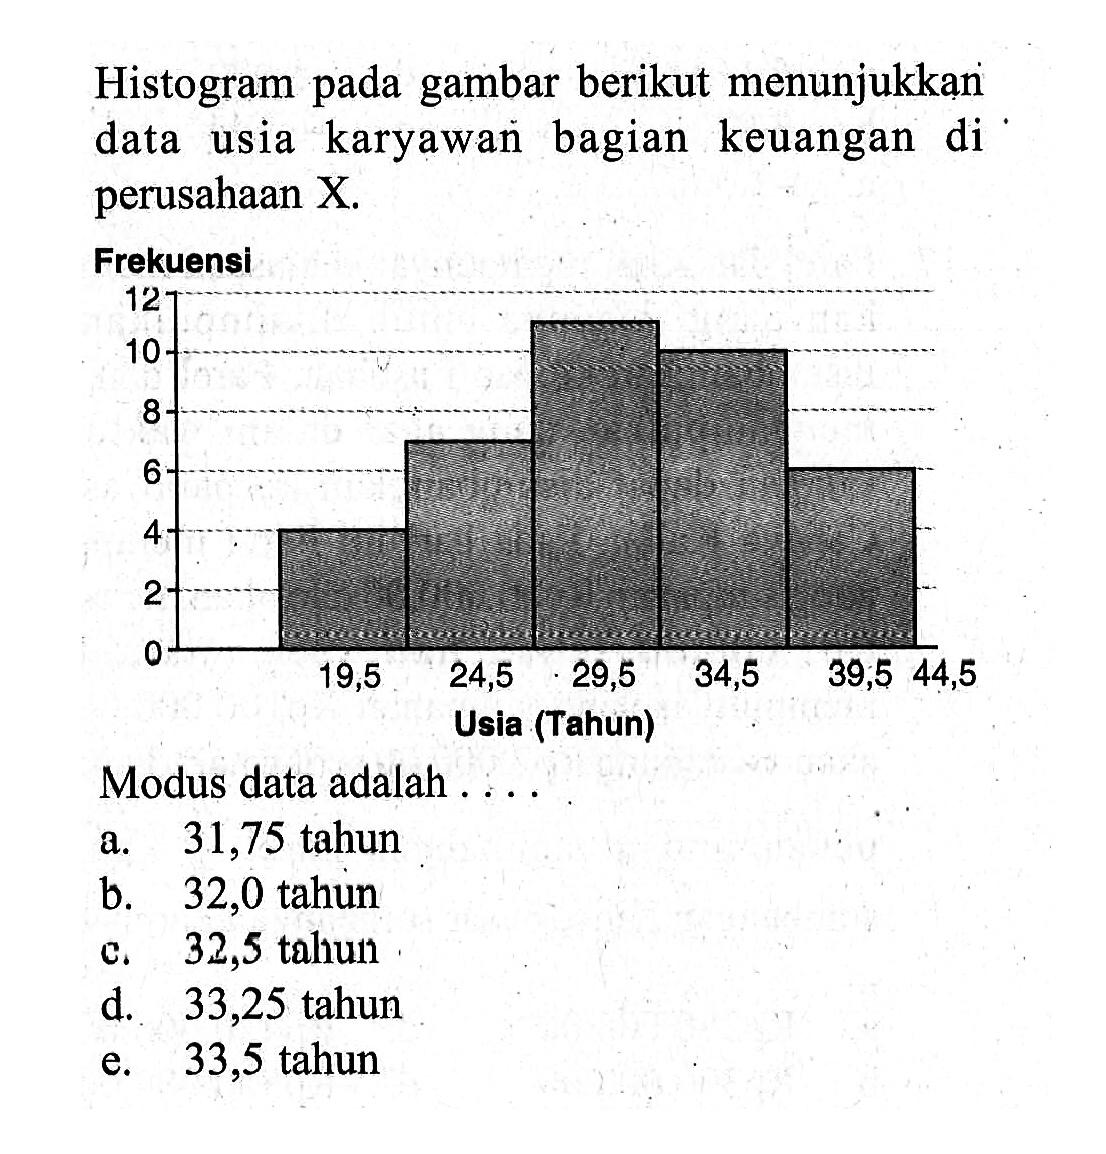 Histogram gambar berikut menunjukkan pada data usia karyawan bagian keuangan di perusahaan X. Modus data adalah ....